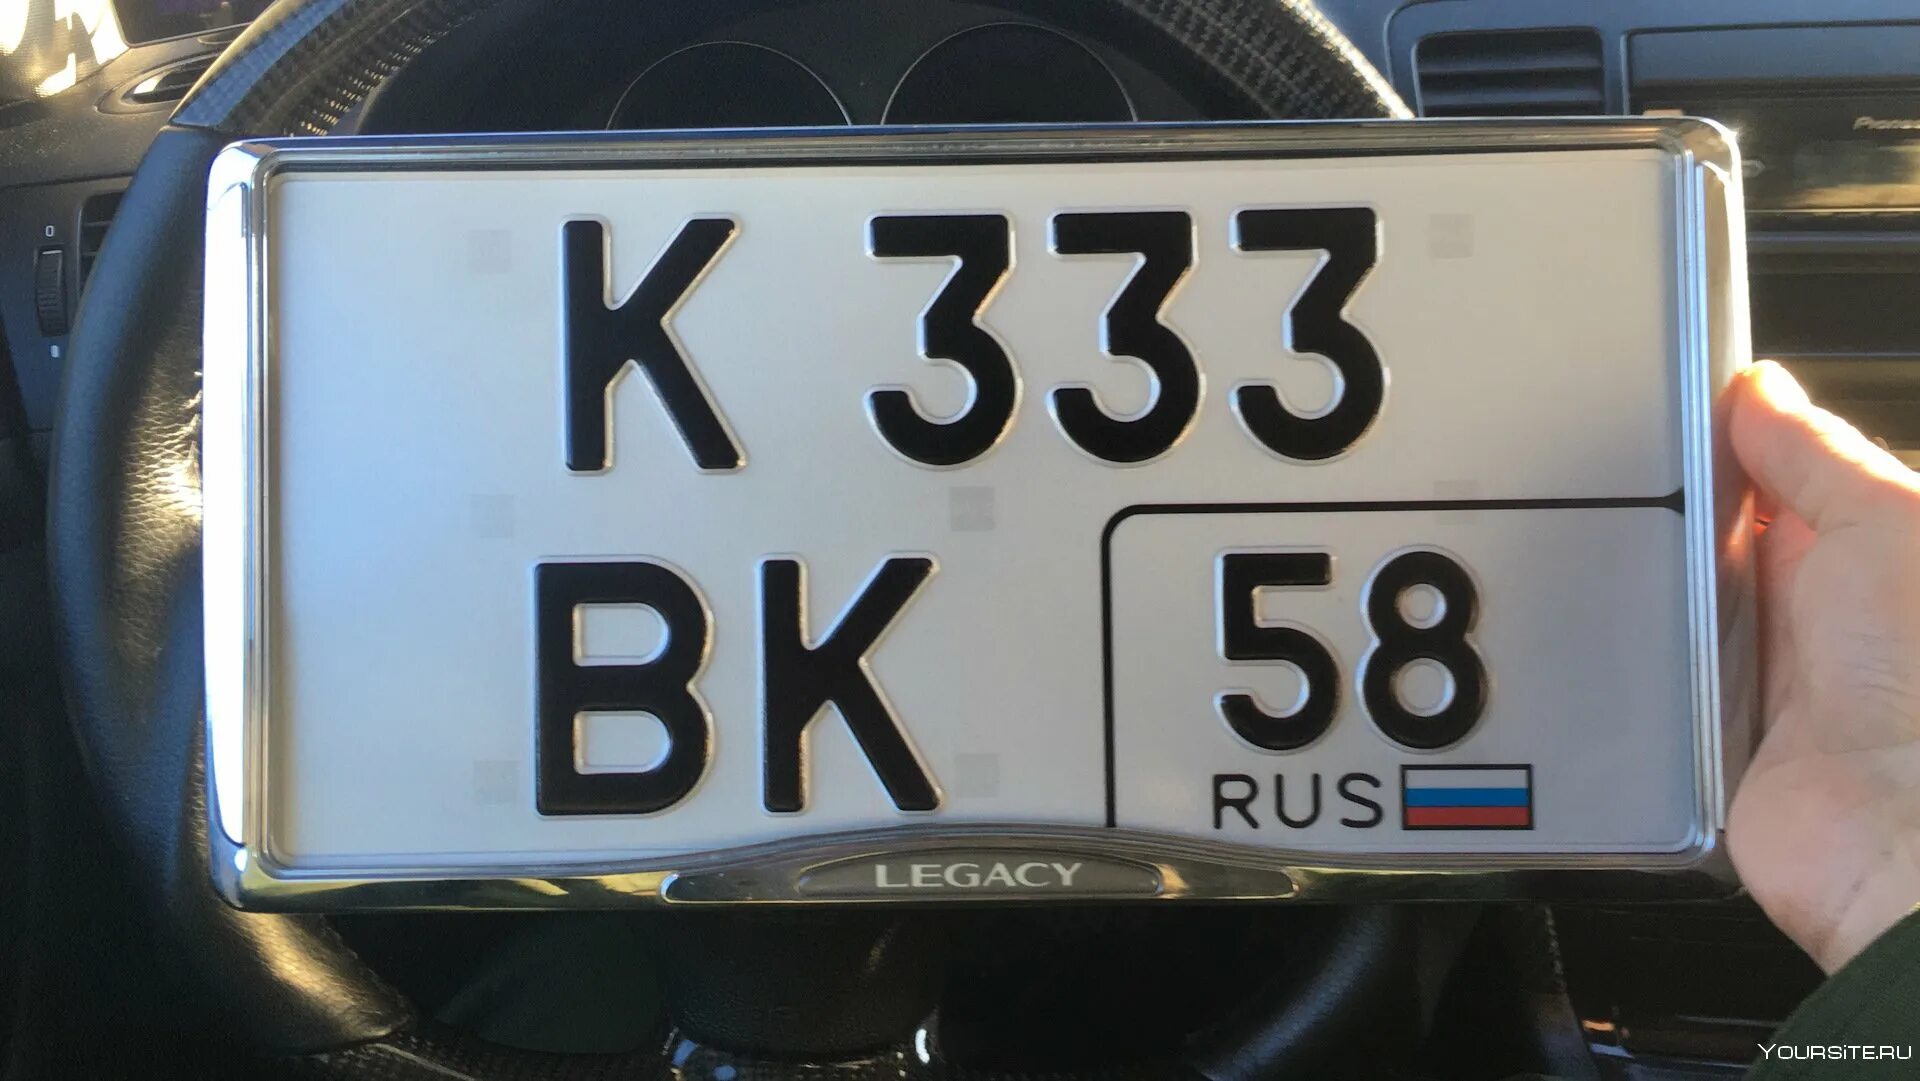 Гос номера края. Размер гос номера 330-165. Квадратные автомобильные номера. Российские номера. Квадратные номера для легкового автомобиля.